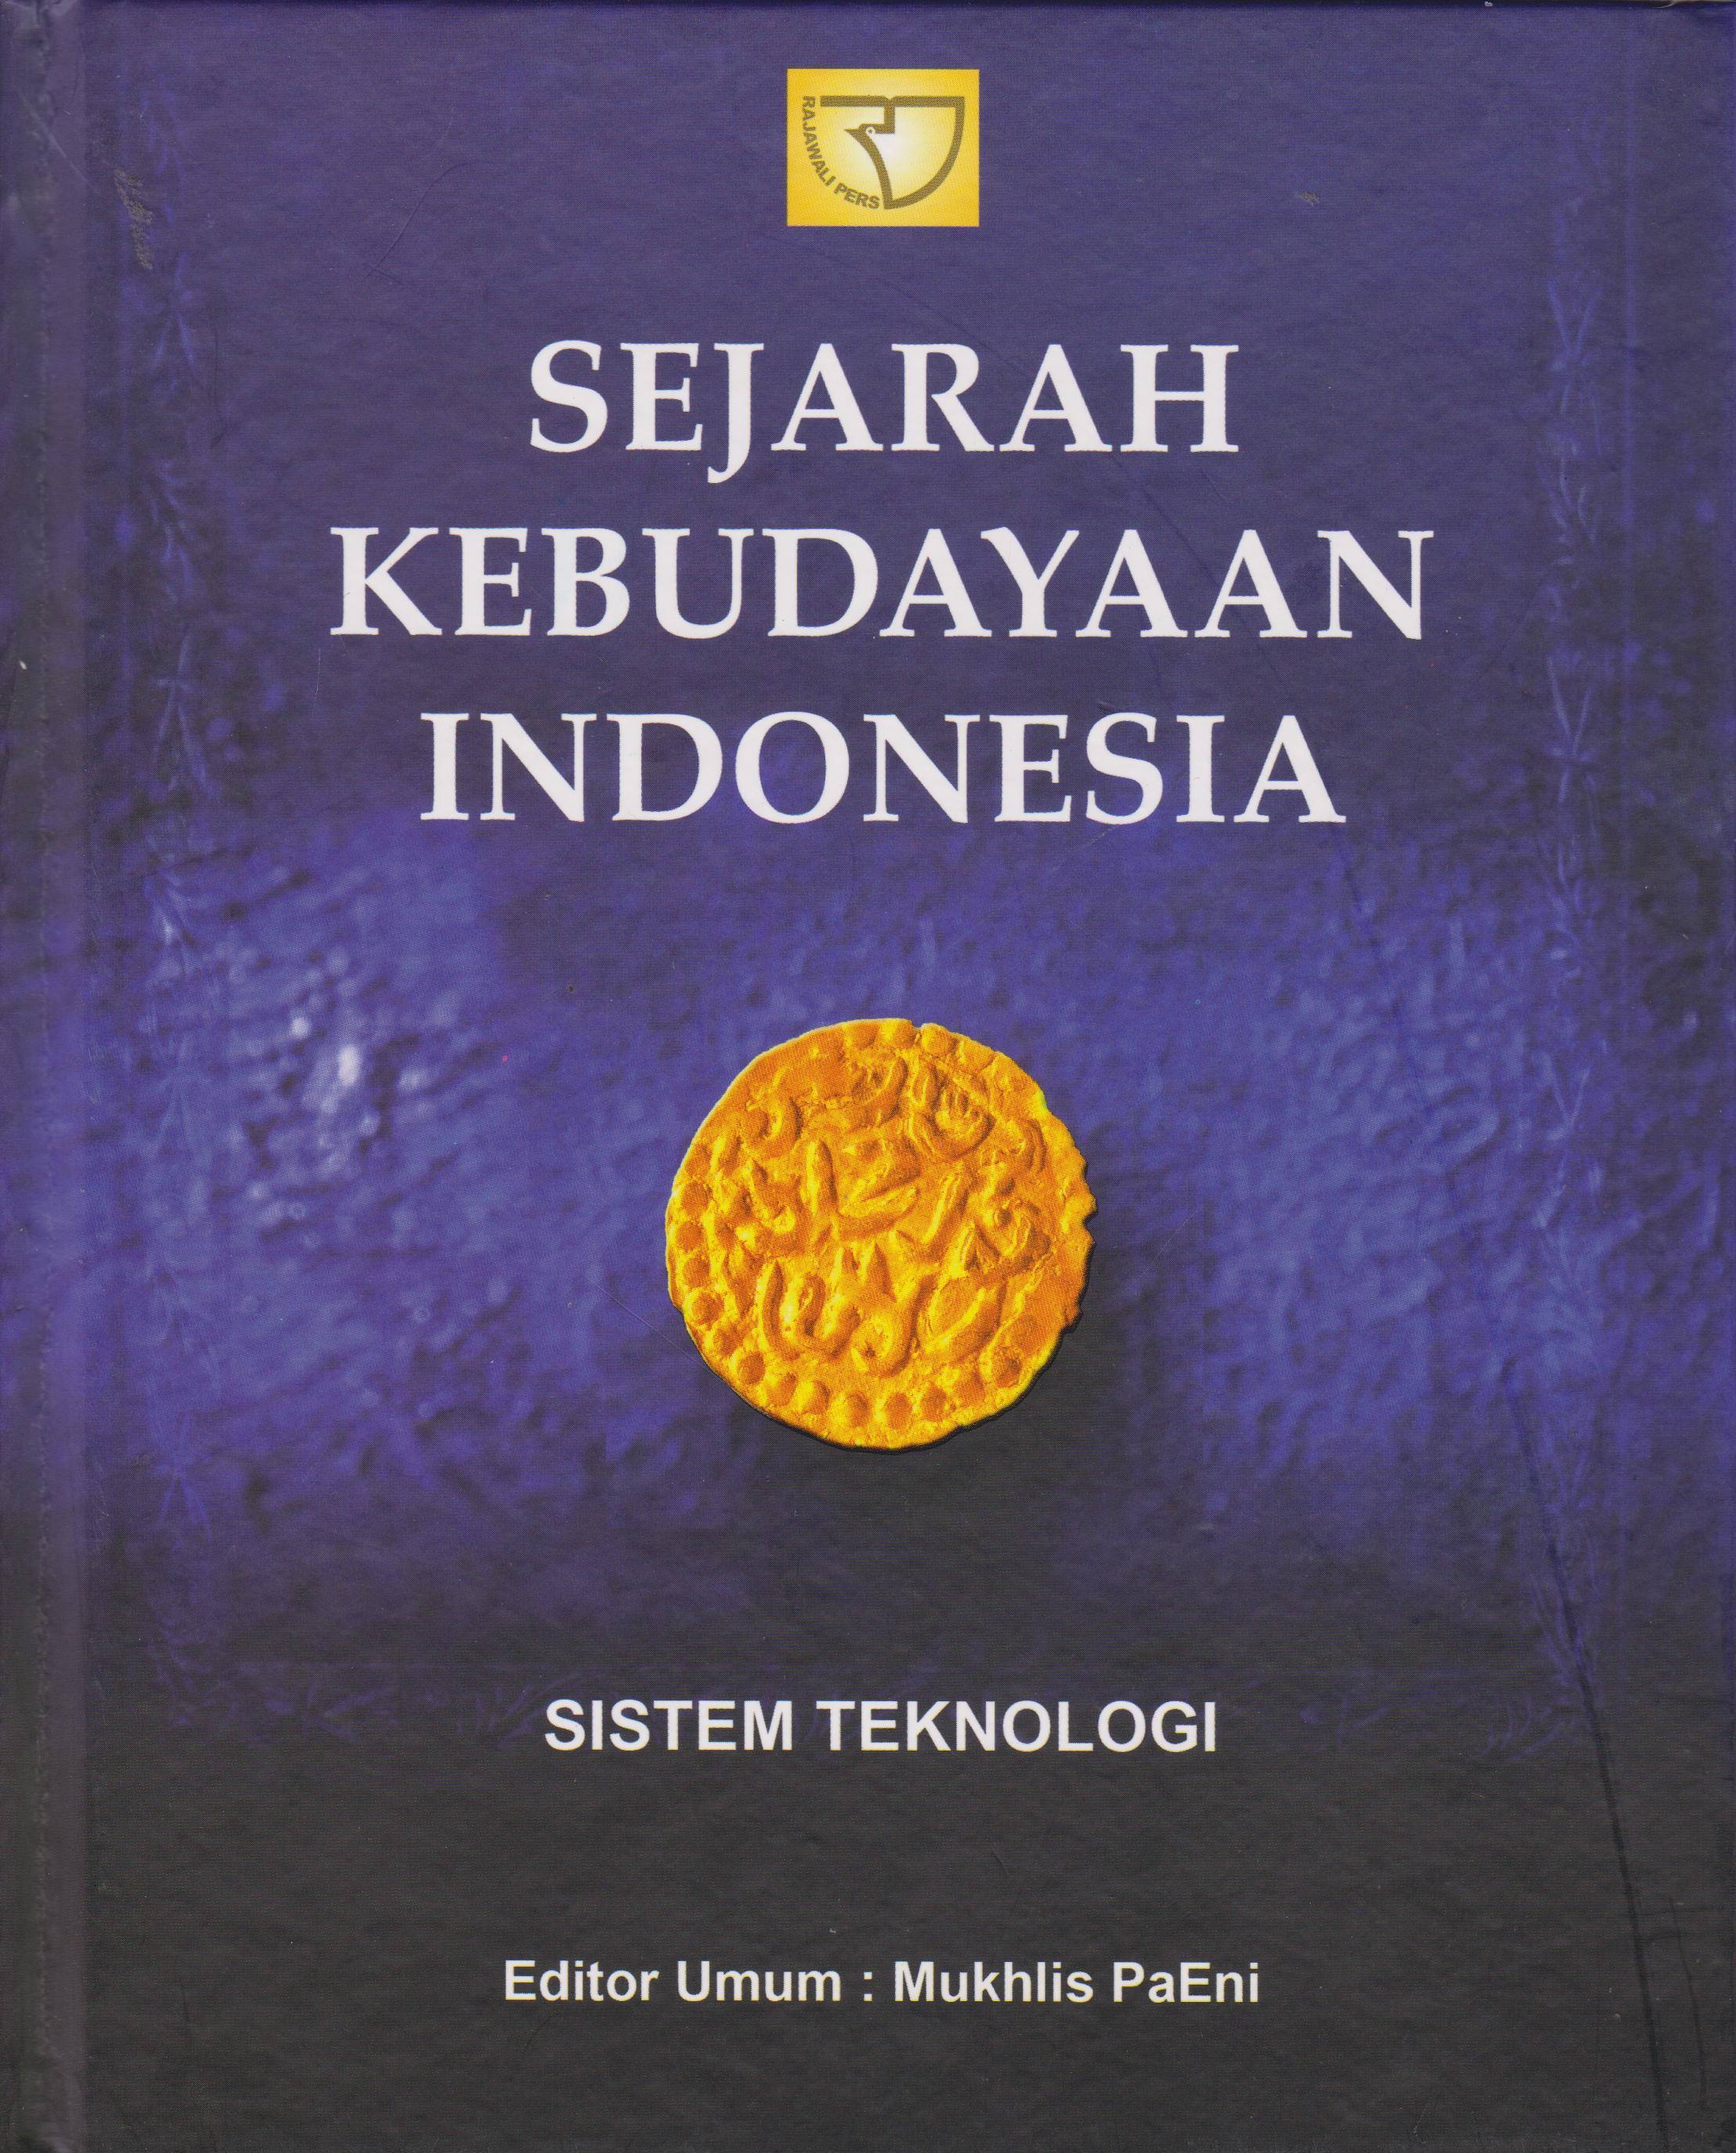 Sejarah kebudayaan indonesia sistem teknologi